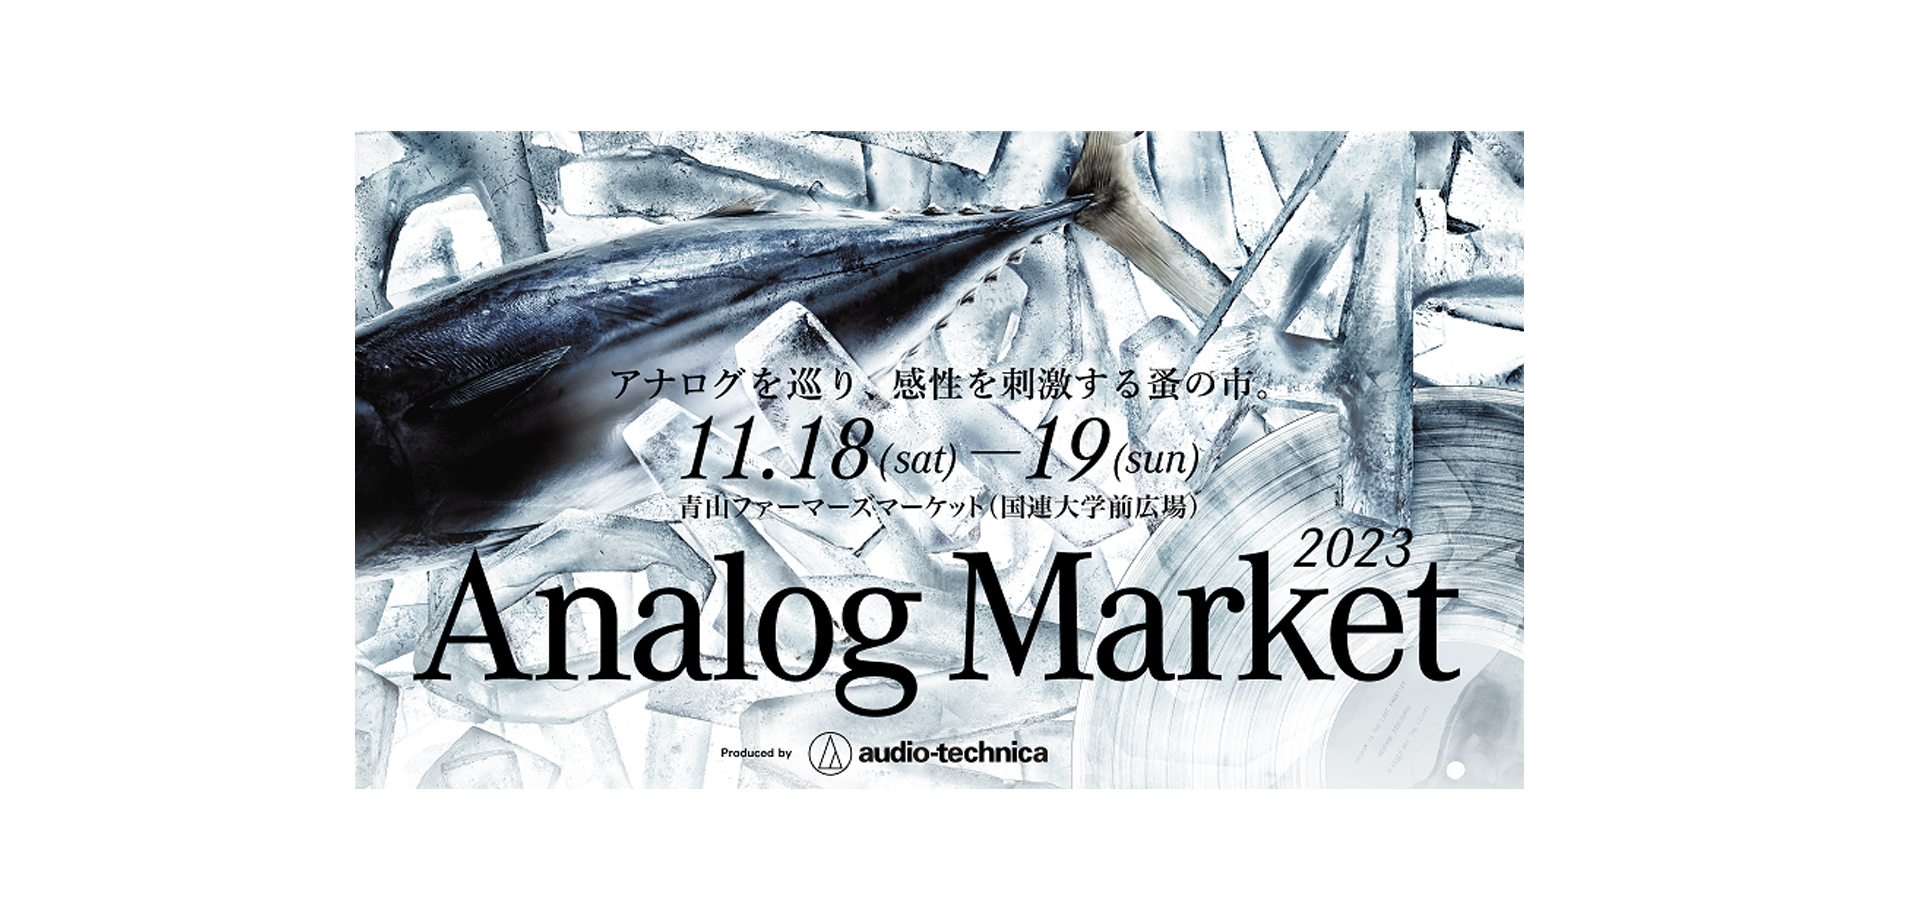 Analog Market 2023バナー